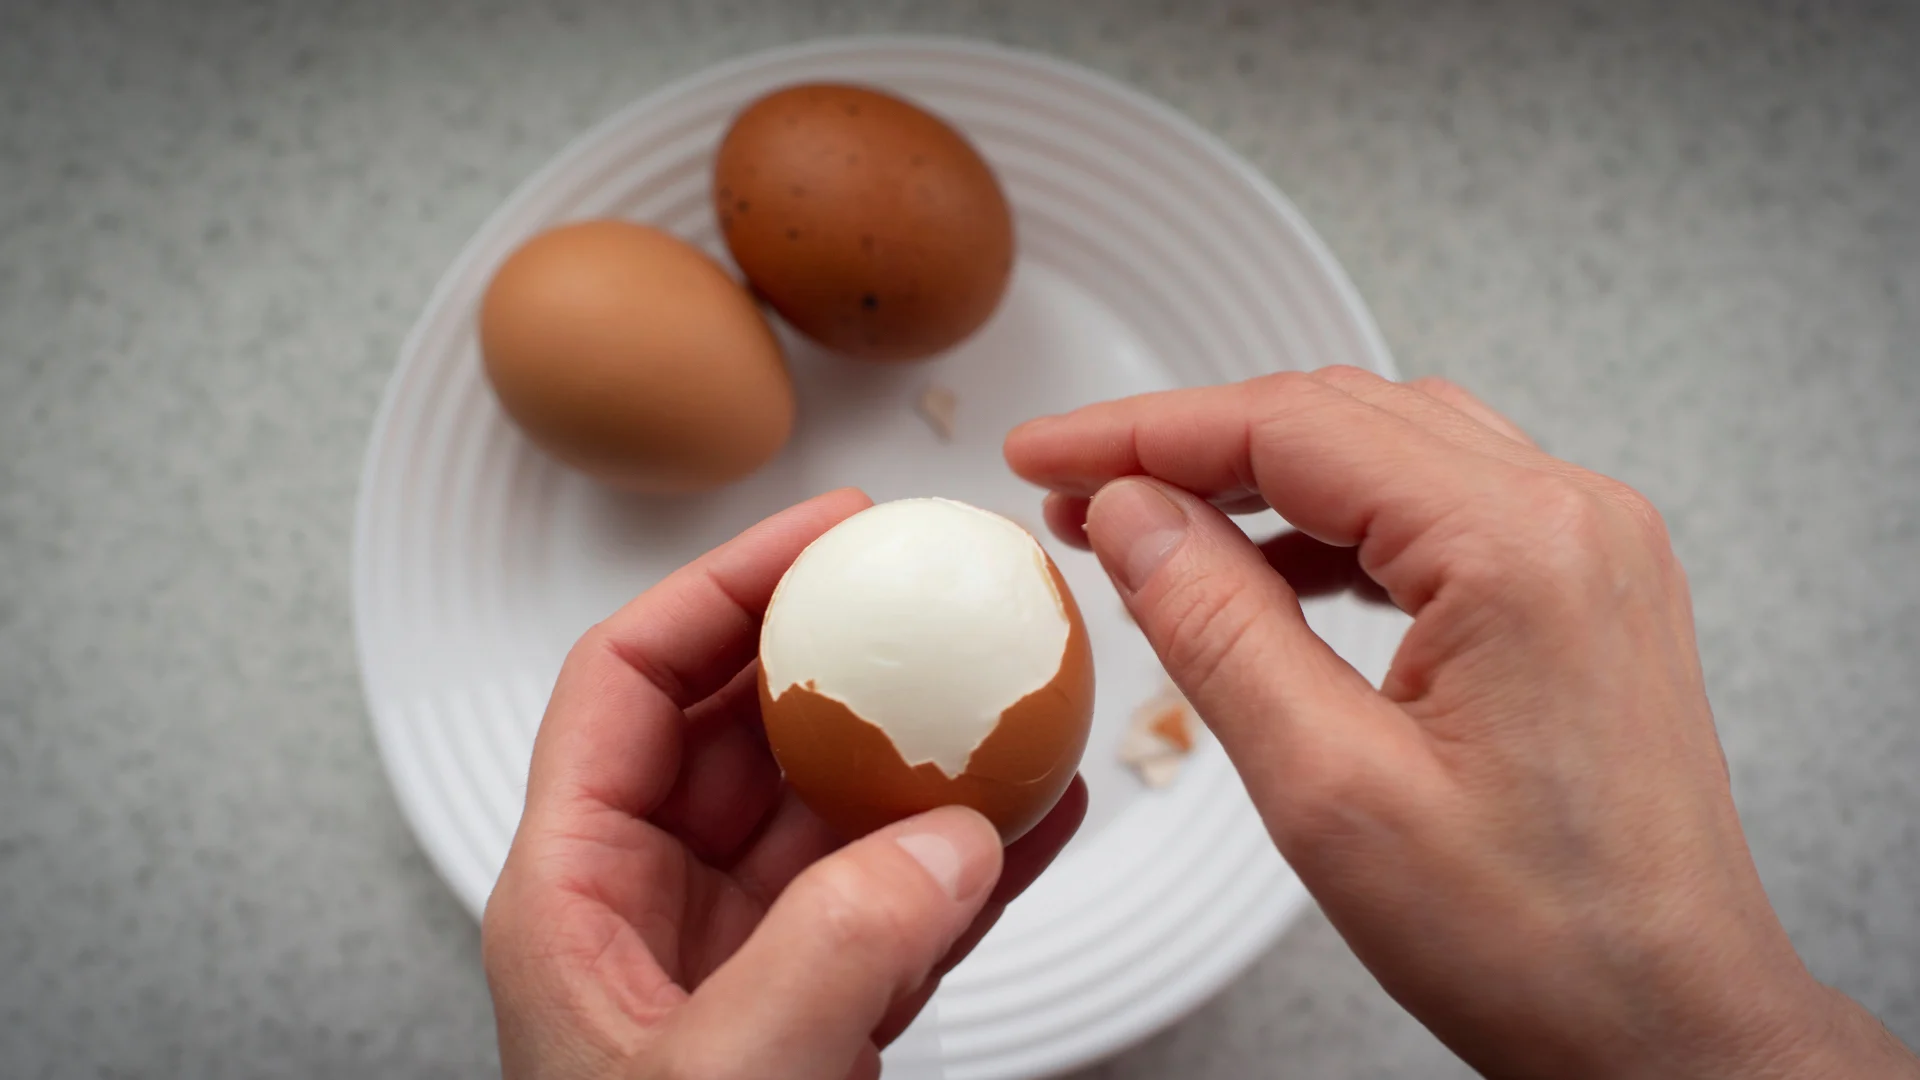 Une main tient un œuf dur, tandis que l’autre écale l’œuf.